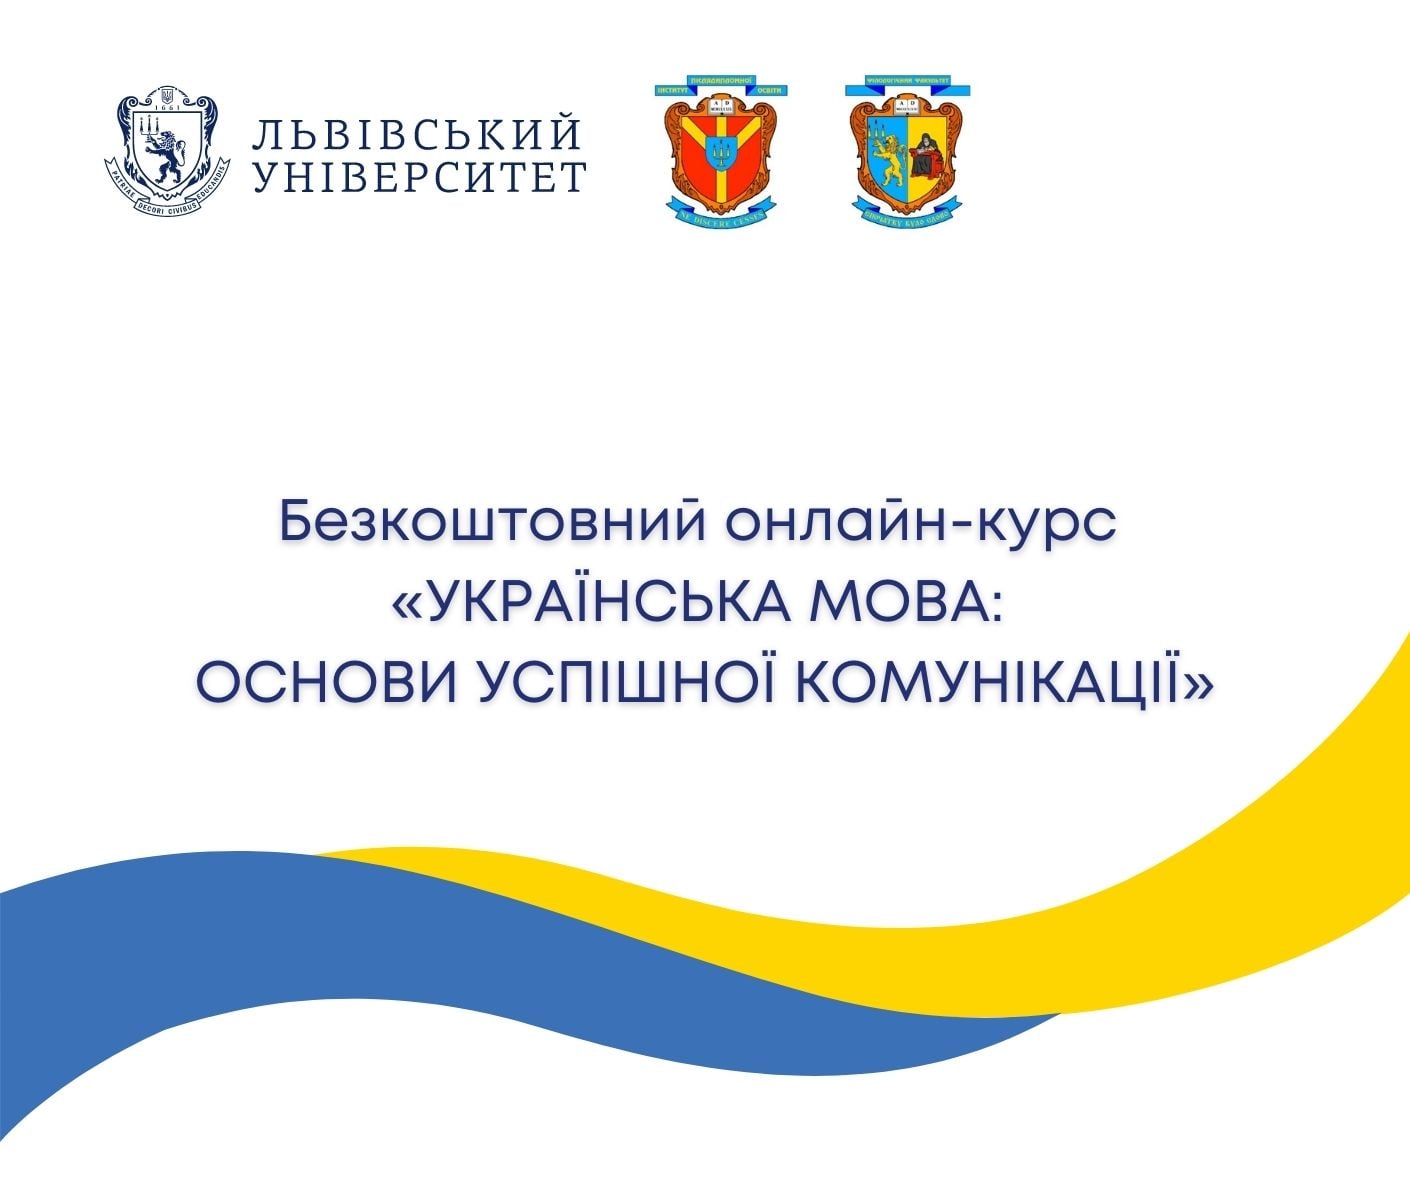 Безкоштовний онлайн-курс «Українська мова: основи успішної комунікації»